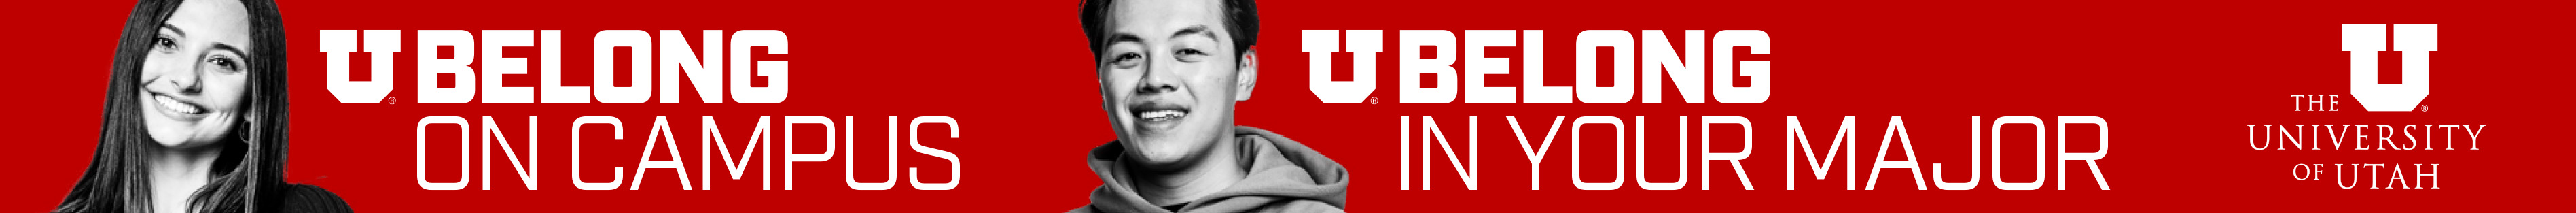 University of Utah